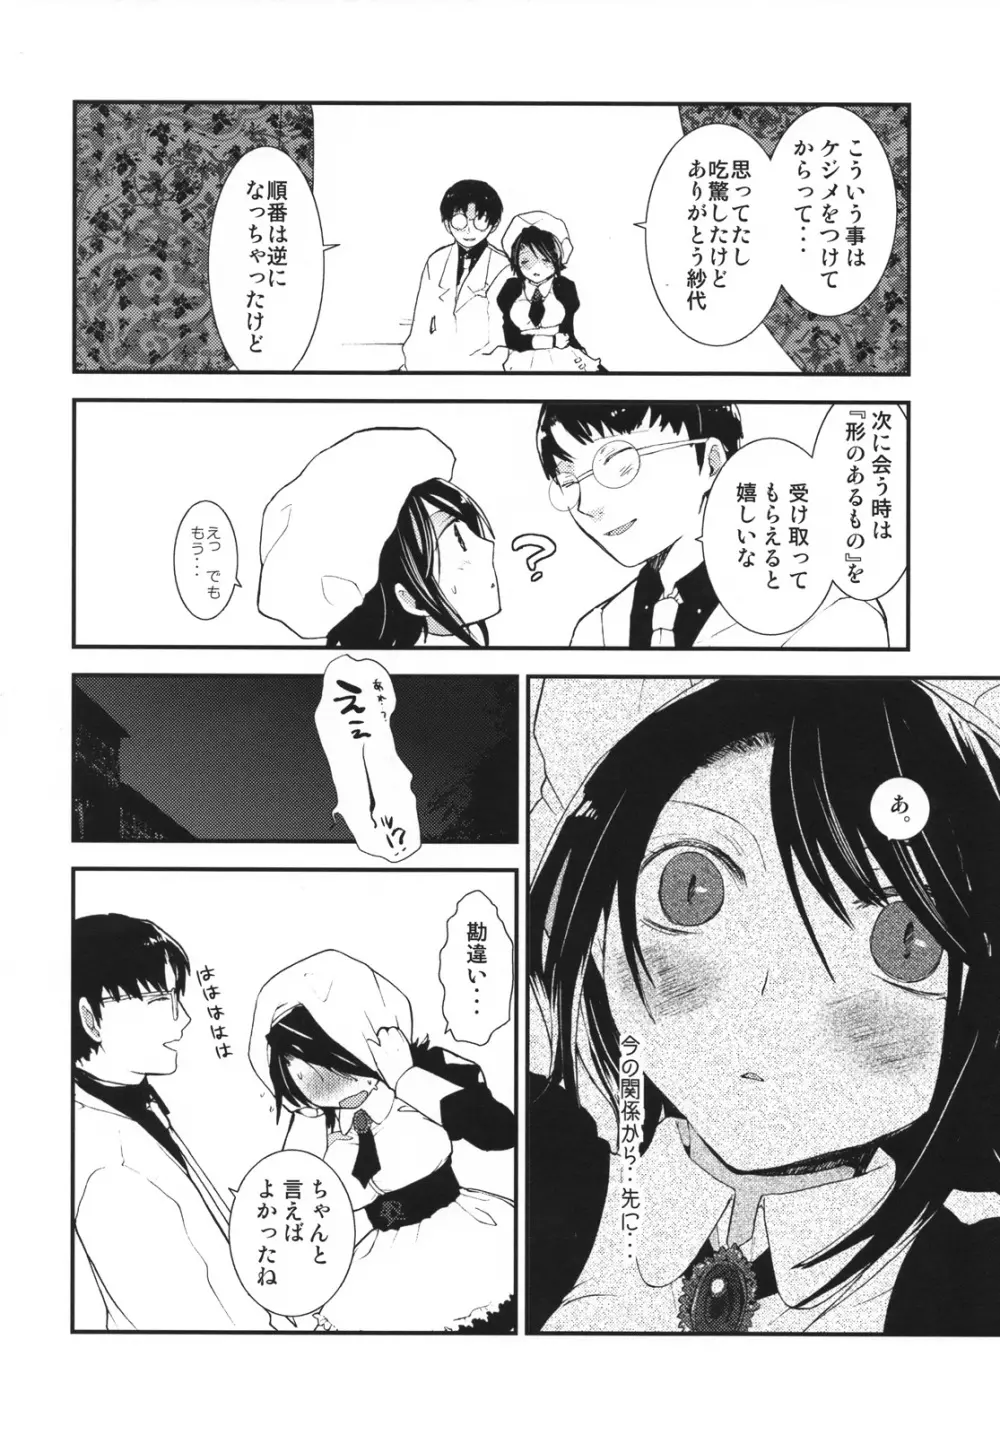 Umineko sono higurashi 13ページ